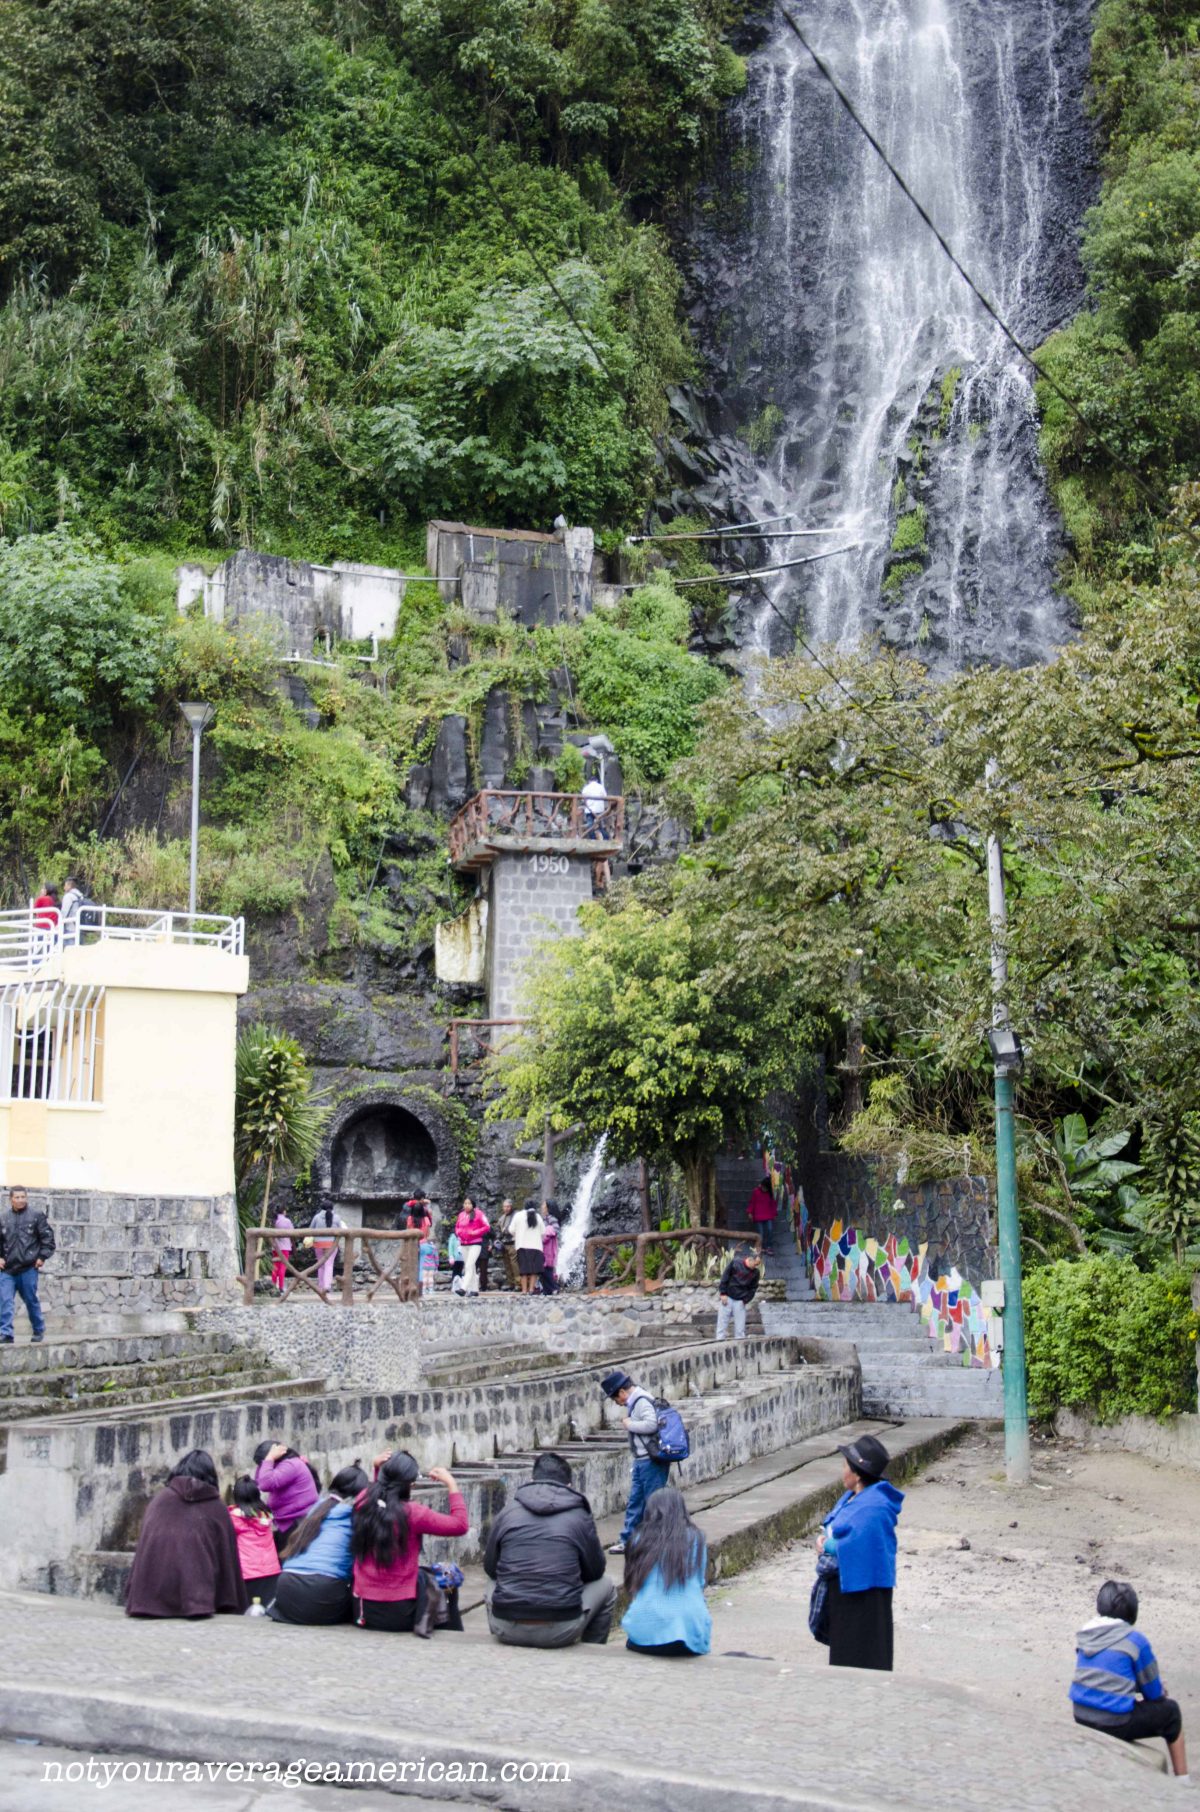 Visitors sitting at the base of La Cabellera de la Virgin (the Virgin's Tresses) in Baños, Ecuador.